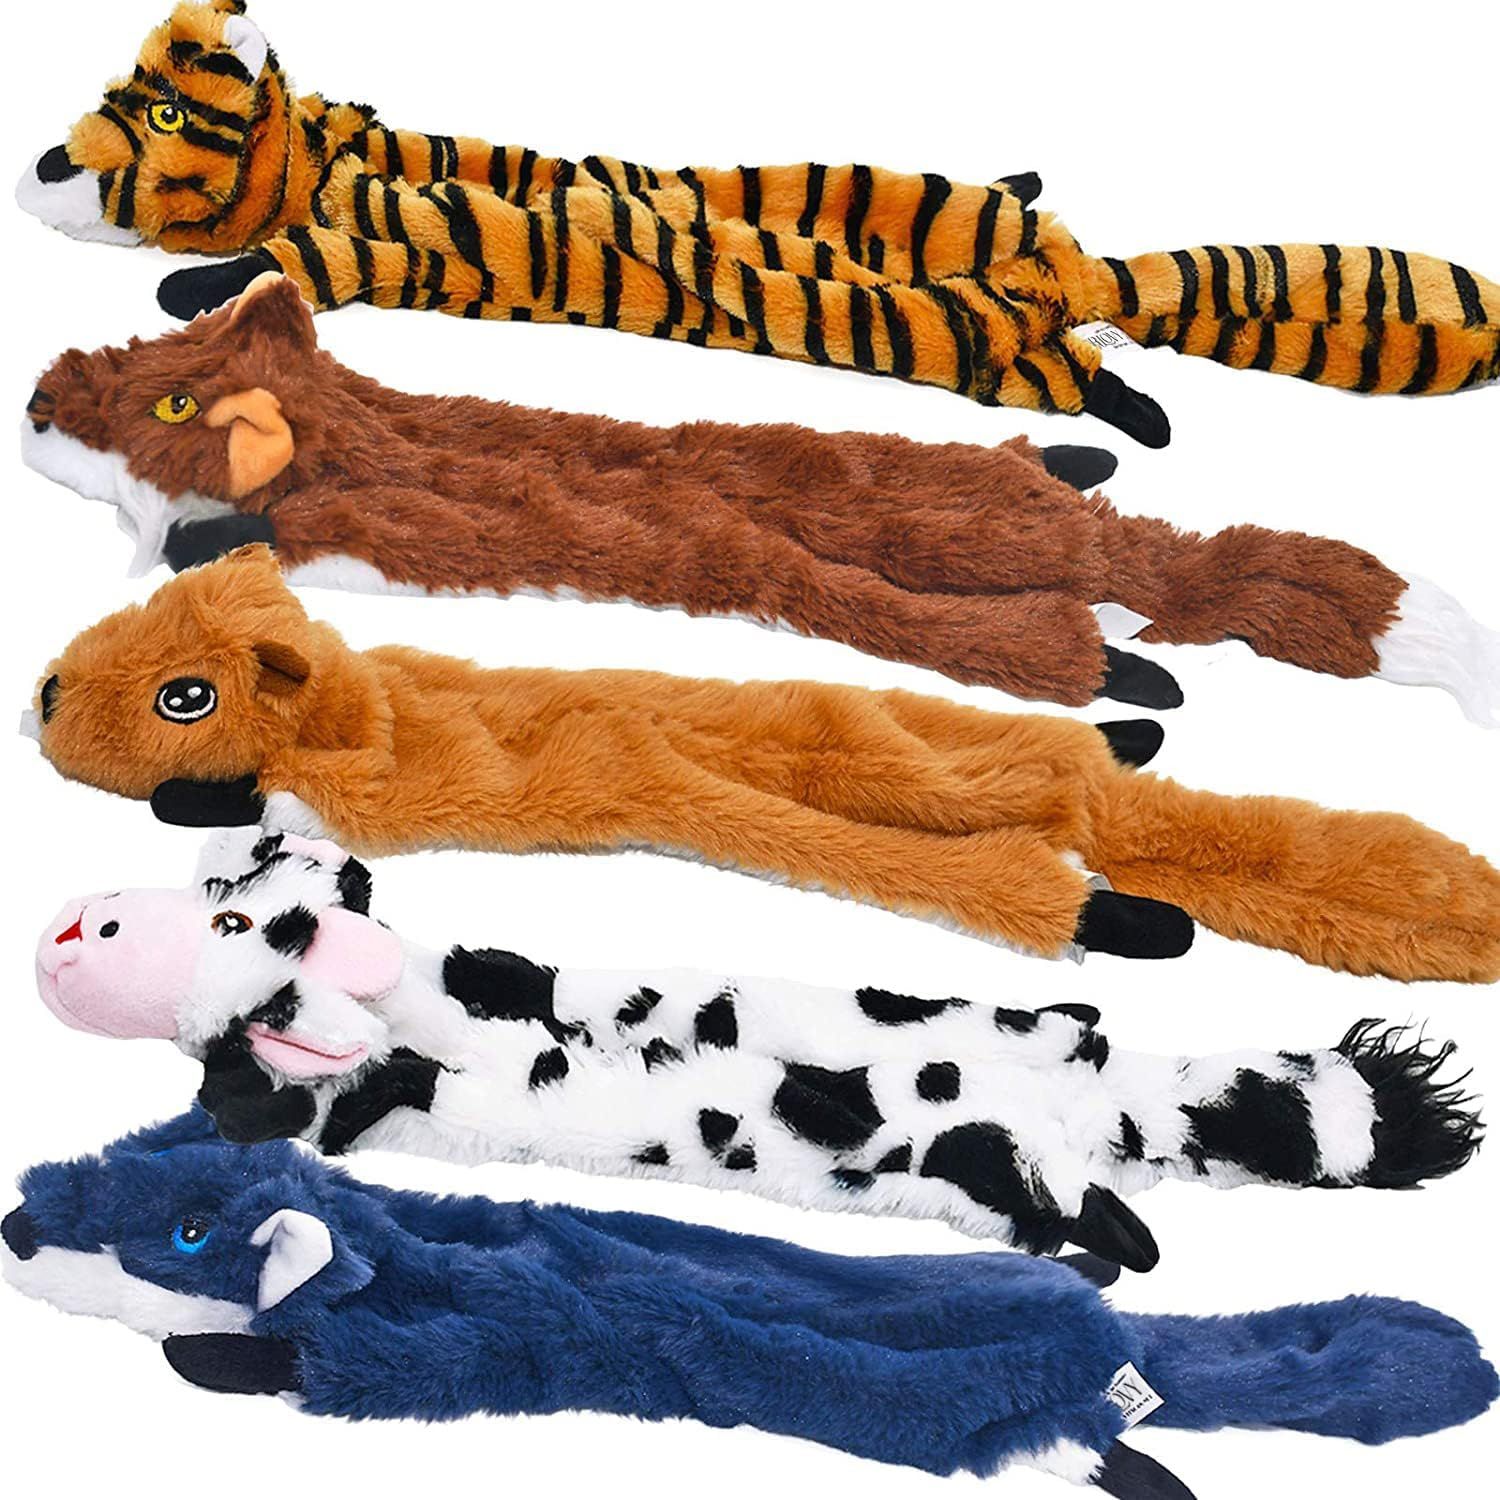 SHARLOVY Dog Squeaky Toys 5 Pack, Pet Toys Crinkle Dog Toy No Stuffing Animals Dog Plush Toy Dog ... | Amazon (US)